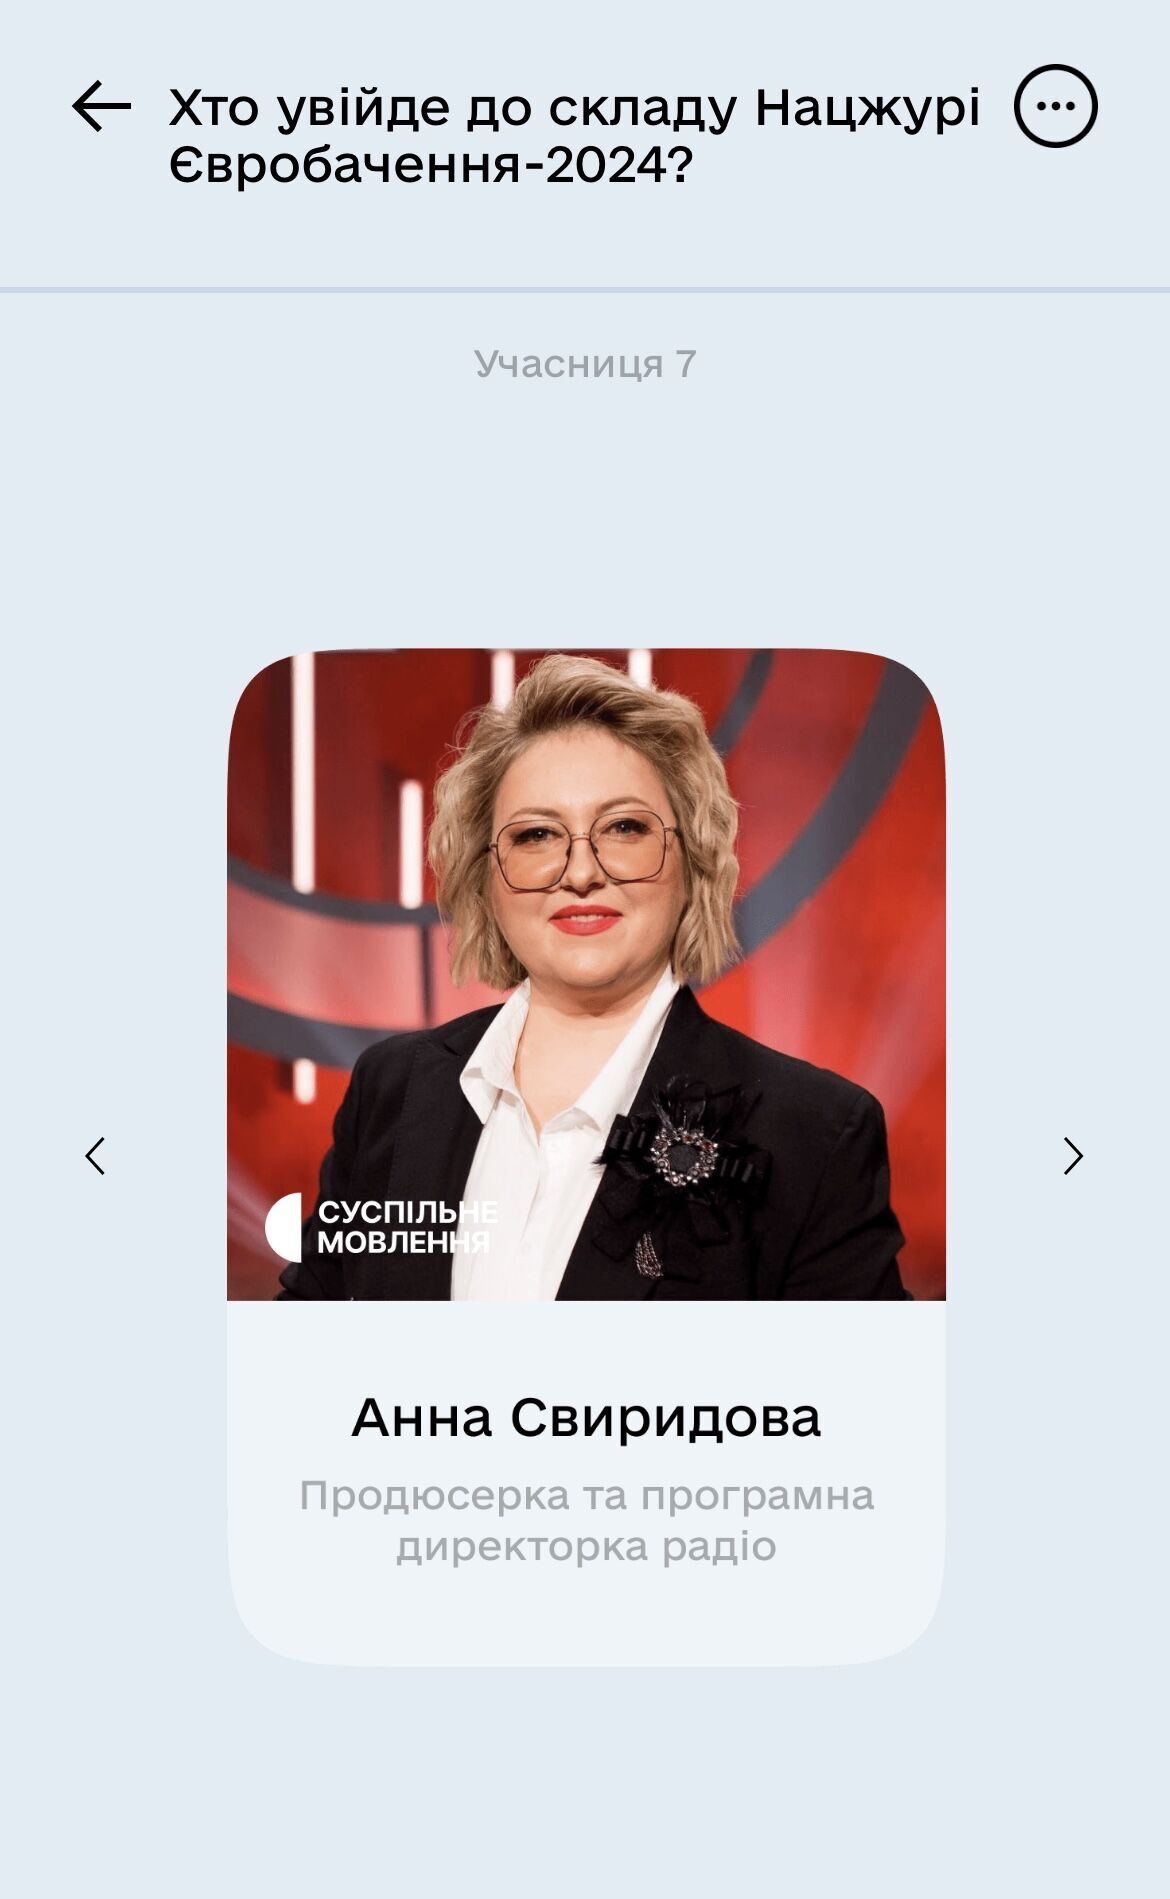 Украинцы смогут выбрать состав Национального жюри на Евровидение 2024. Как проголосовать в "Дії"